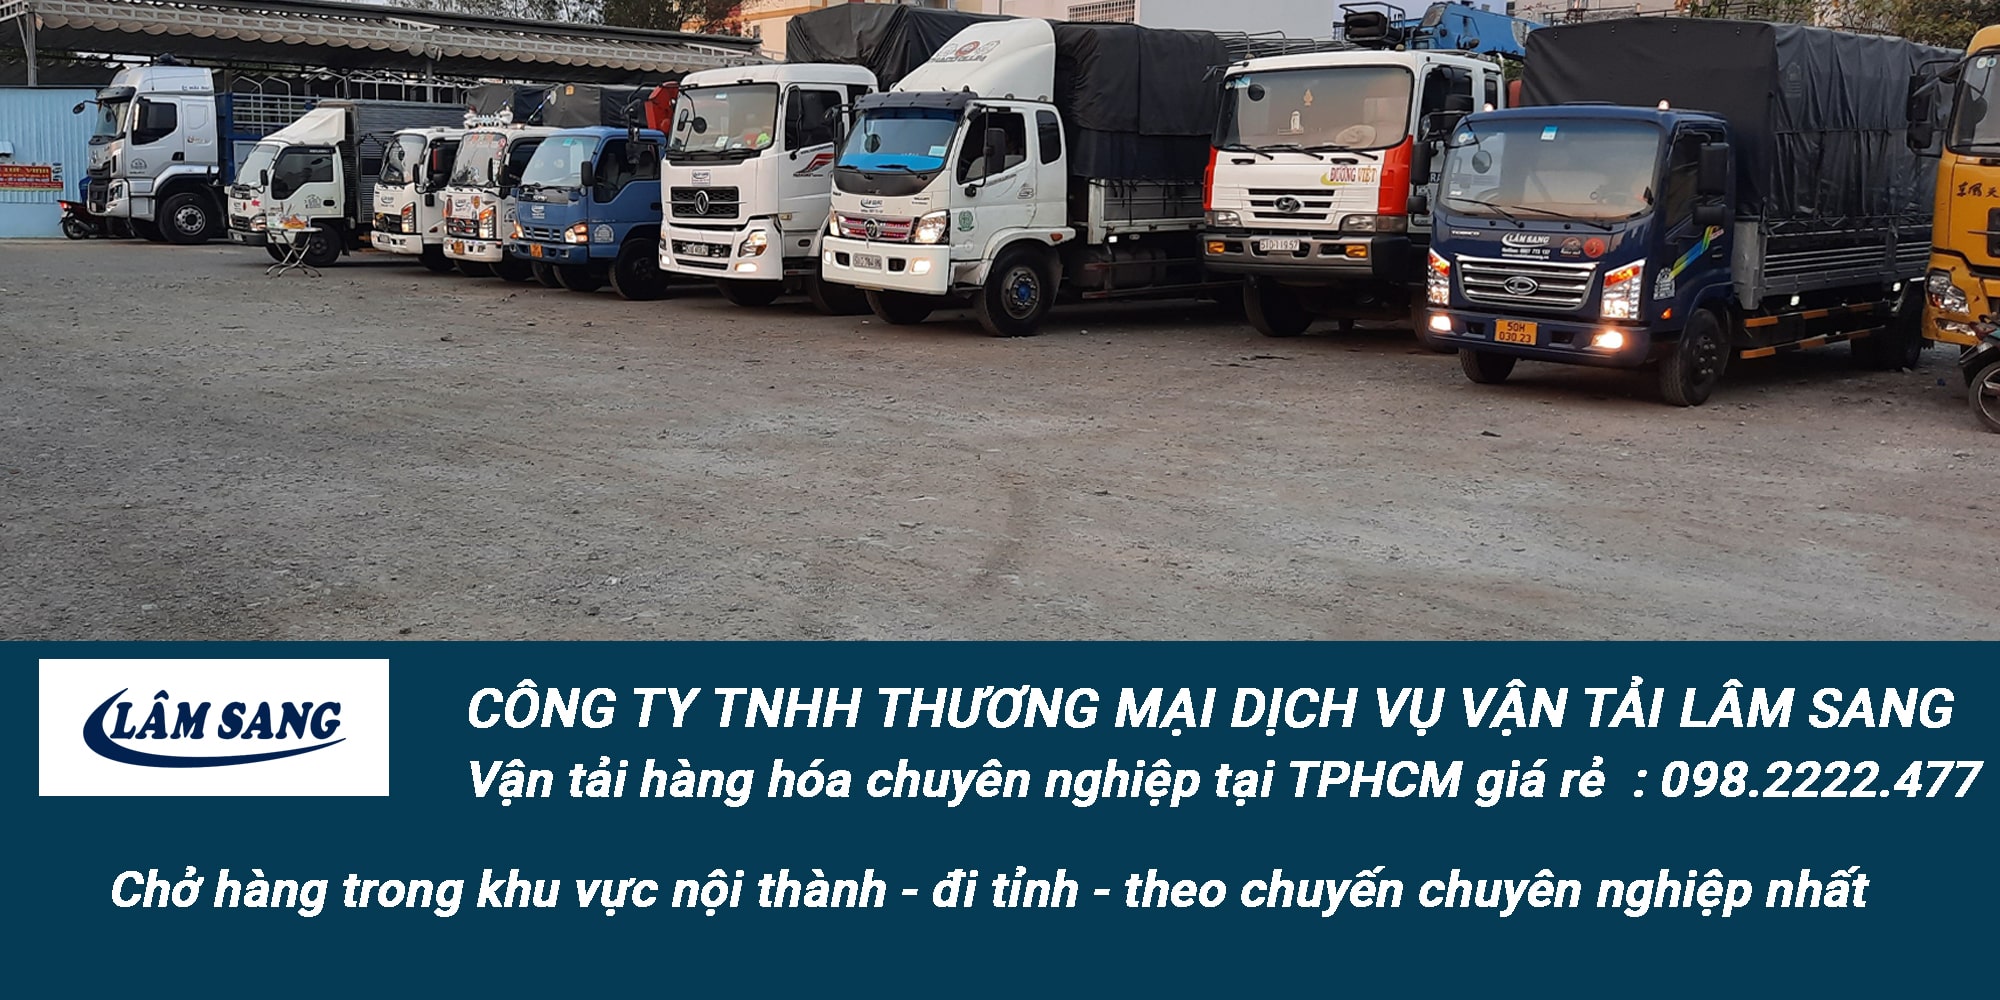 Dịch vụ vận tải hàng hoá tại tphcm giá rẻ và chuyên nghiệp